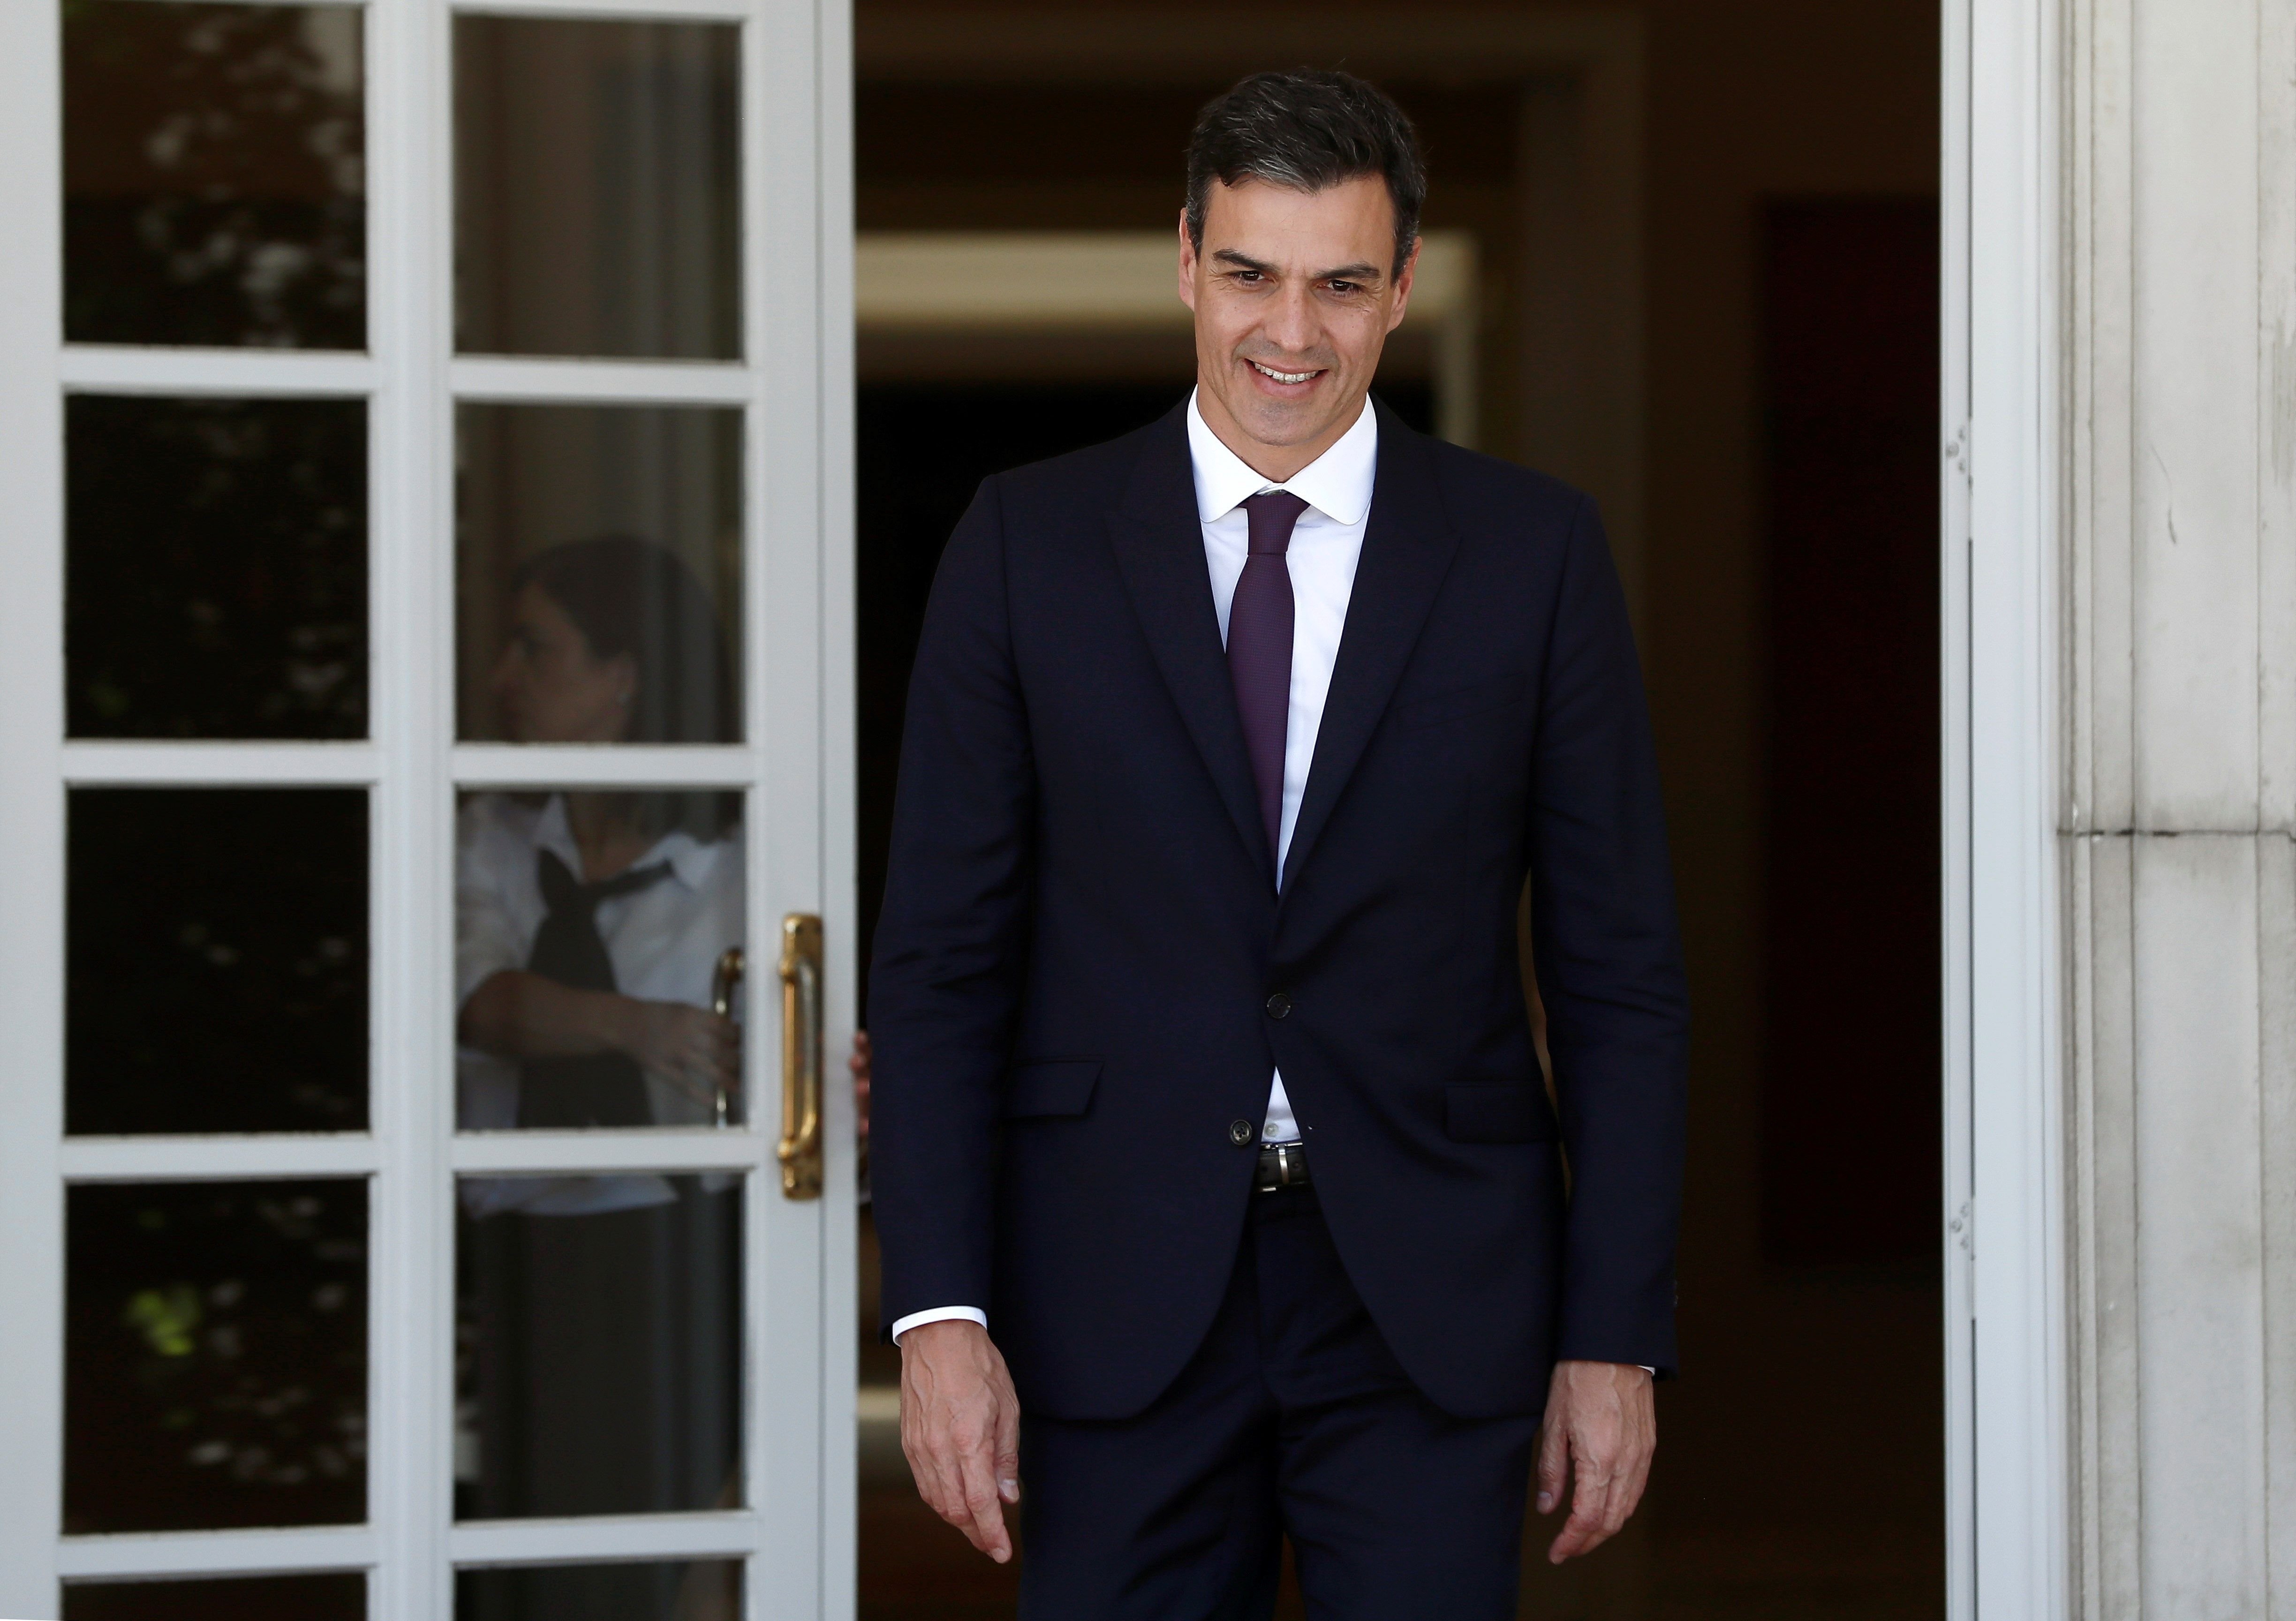 El govern espanyol intenta frenar els dubtes sobre noves eleccions